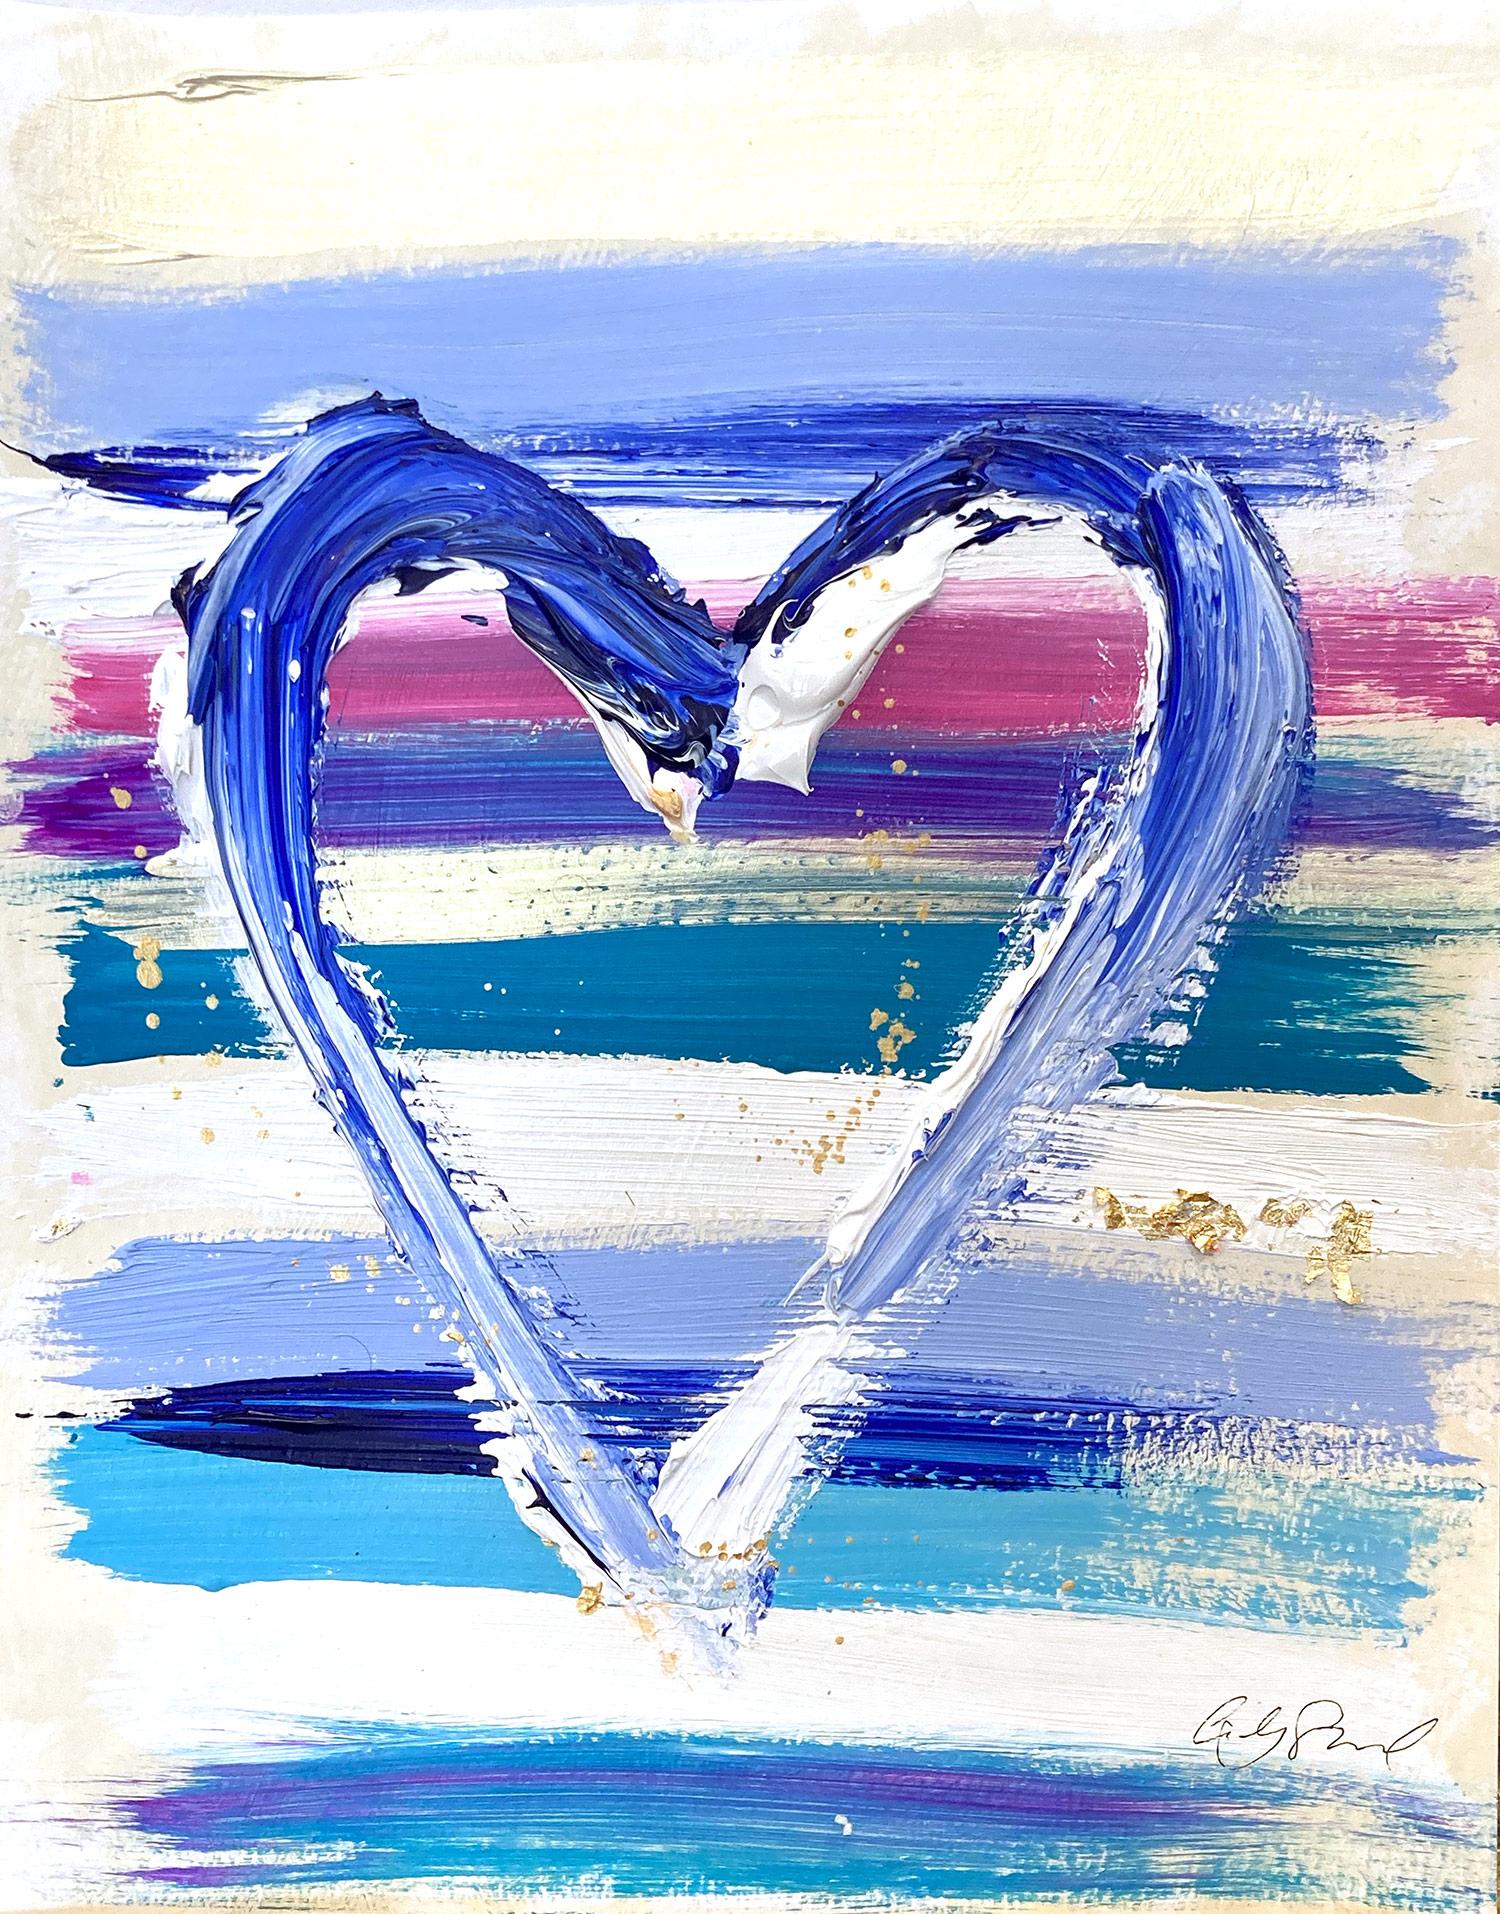 Abstract Painting Cindy Shaoul - « My Charismatic Heart », peinture abstraite colorée à l'acrylique et à la feuille d'or sur papier 